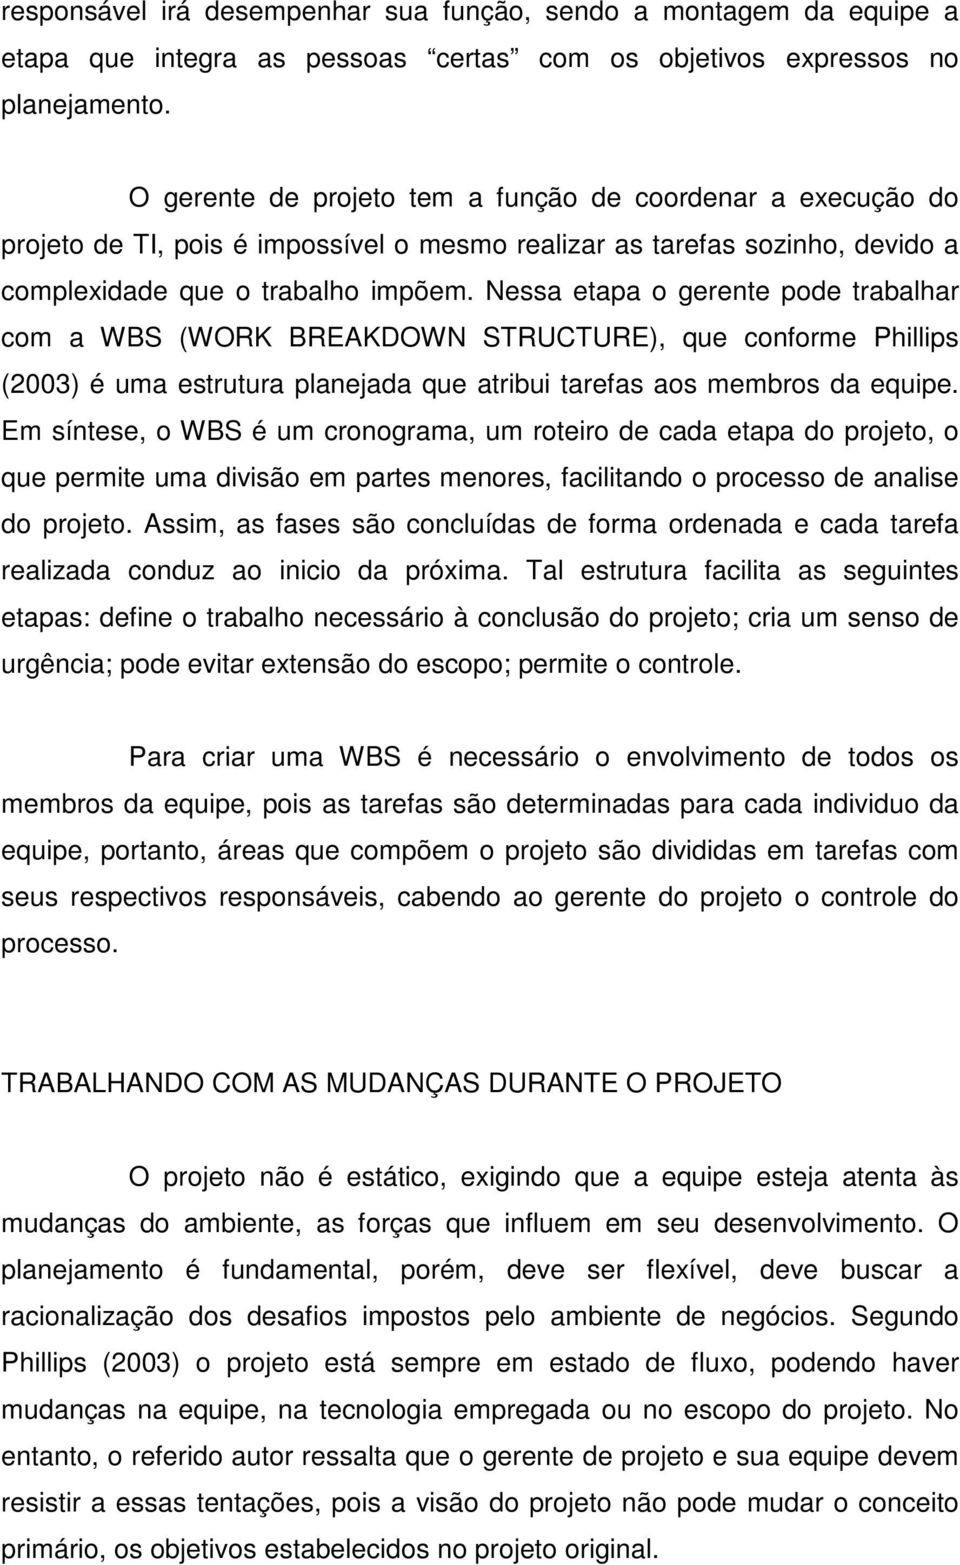 Nessa etapa o gerente pode trabalhar com a WBS (WORK BREAKDOWN STRUCTURE), que conforme Phillips (2003) é uma estrutura planejada que atribui tarefas aos membros da equipe.